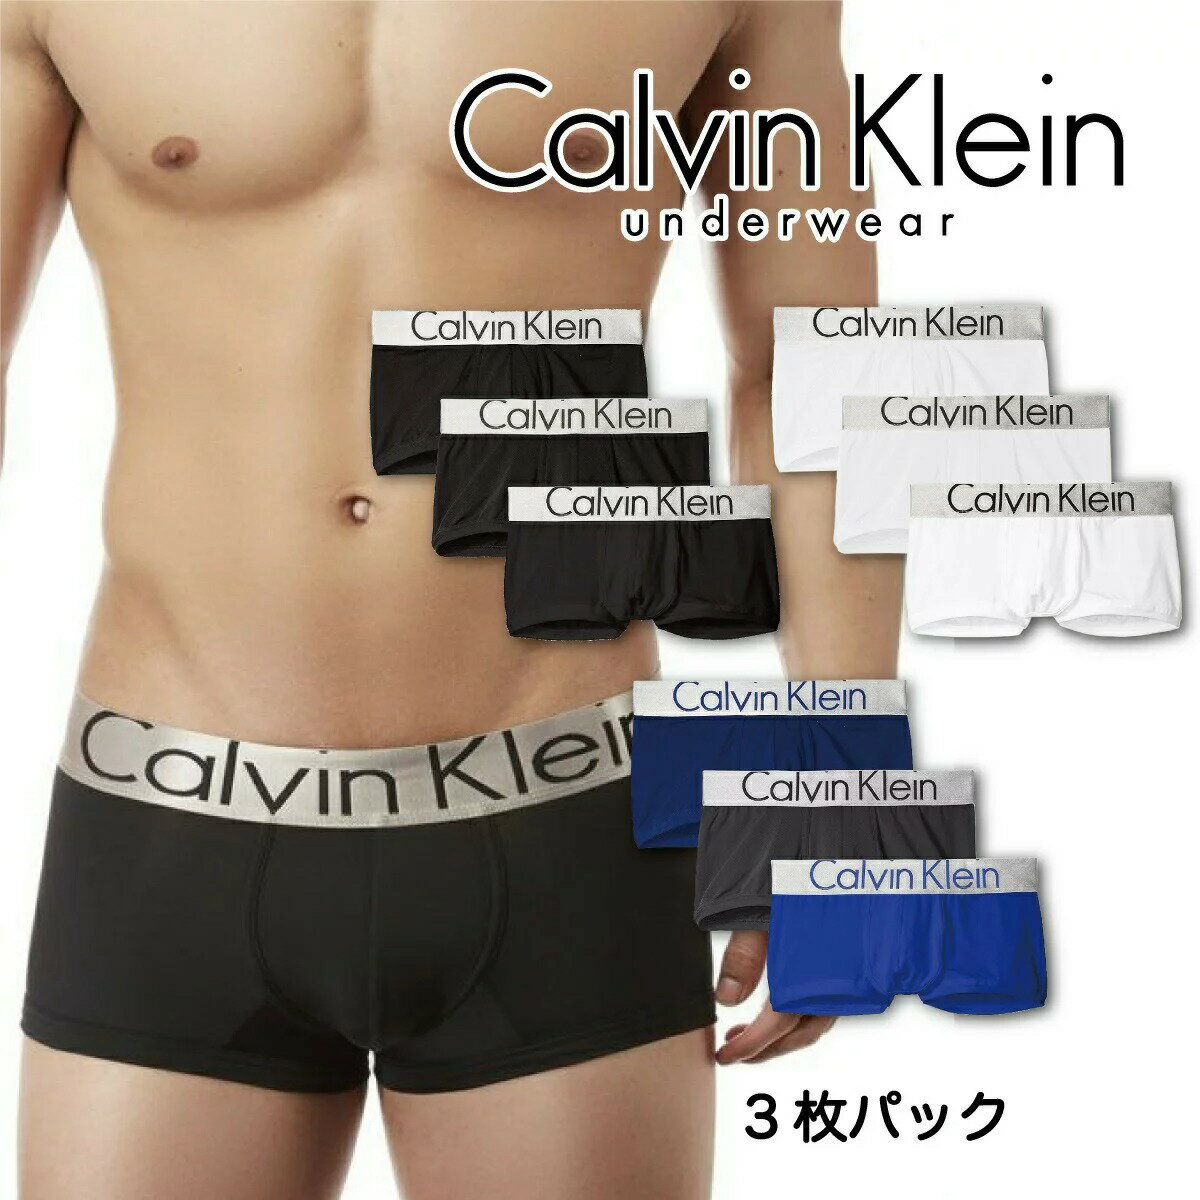 カルバン・クライン カルバンクライン ボクサーパンツ Calvin Klein 下着 アンダーウェア メンズ 男性 NB1656 コットン インナー ブラック ホワイト ローライズ 無地 シンプル 誕生日プレゼント 彼氏 父 男性 旦那 ギフト 大きいサイズ[衣類]